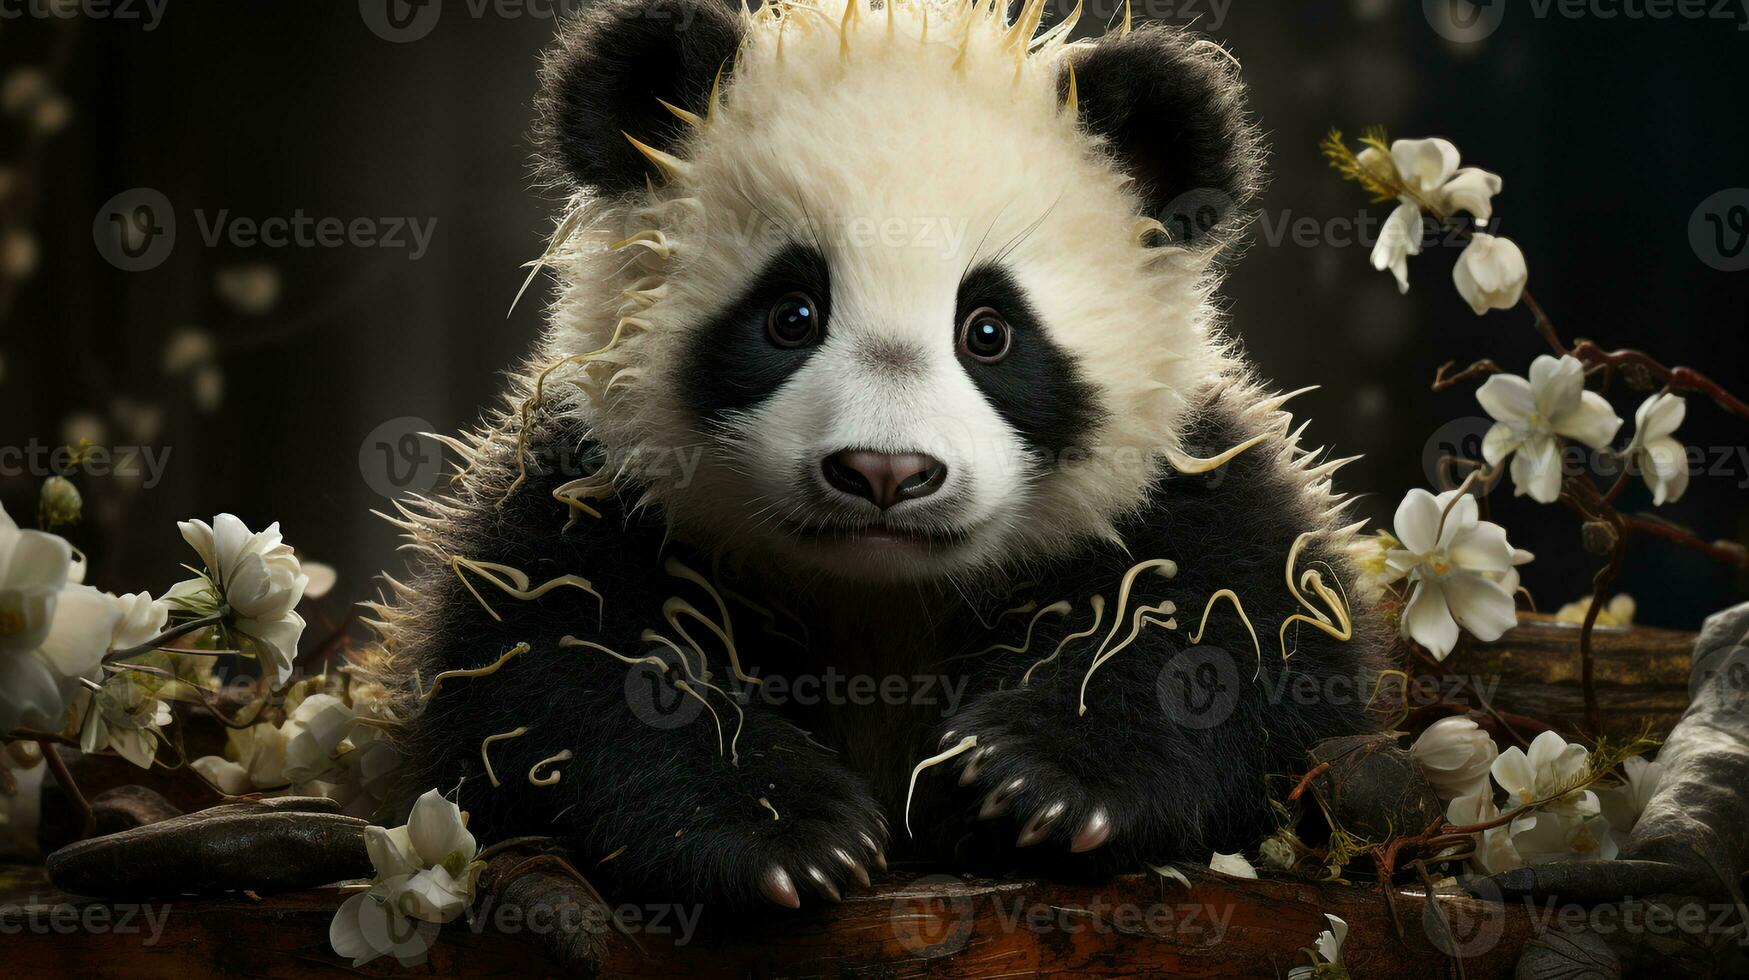 AI generated Cute panda wallpapers photo